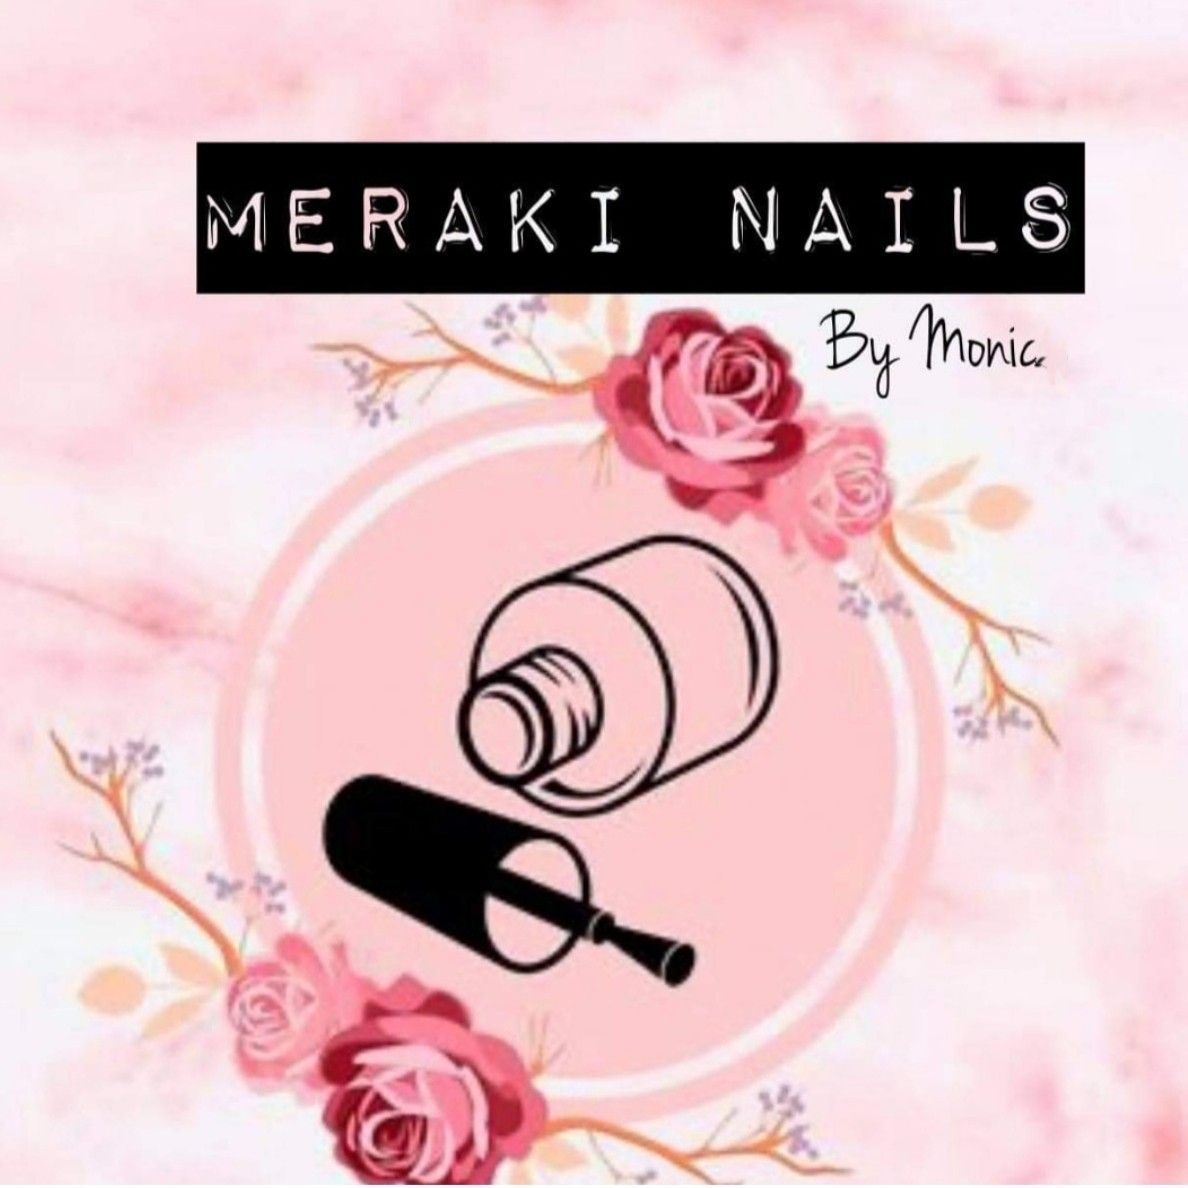 Meraki Nails By Monic, 701 Westfield Ave, 701 Westfield Ave, Elizabeth NJ, Elizabeth, 07208